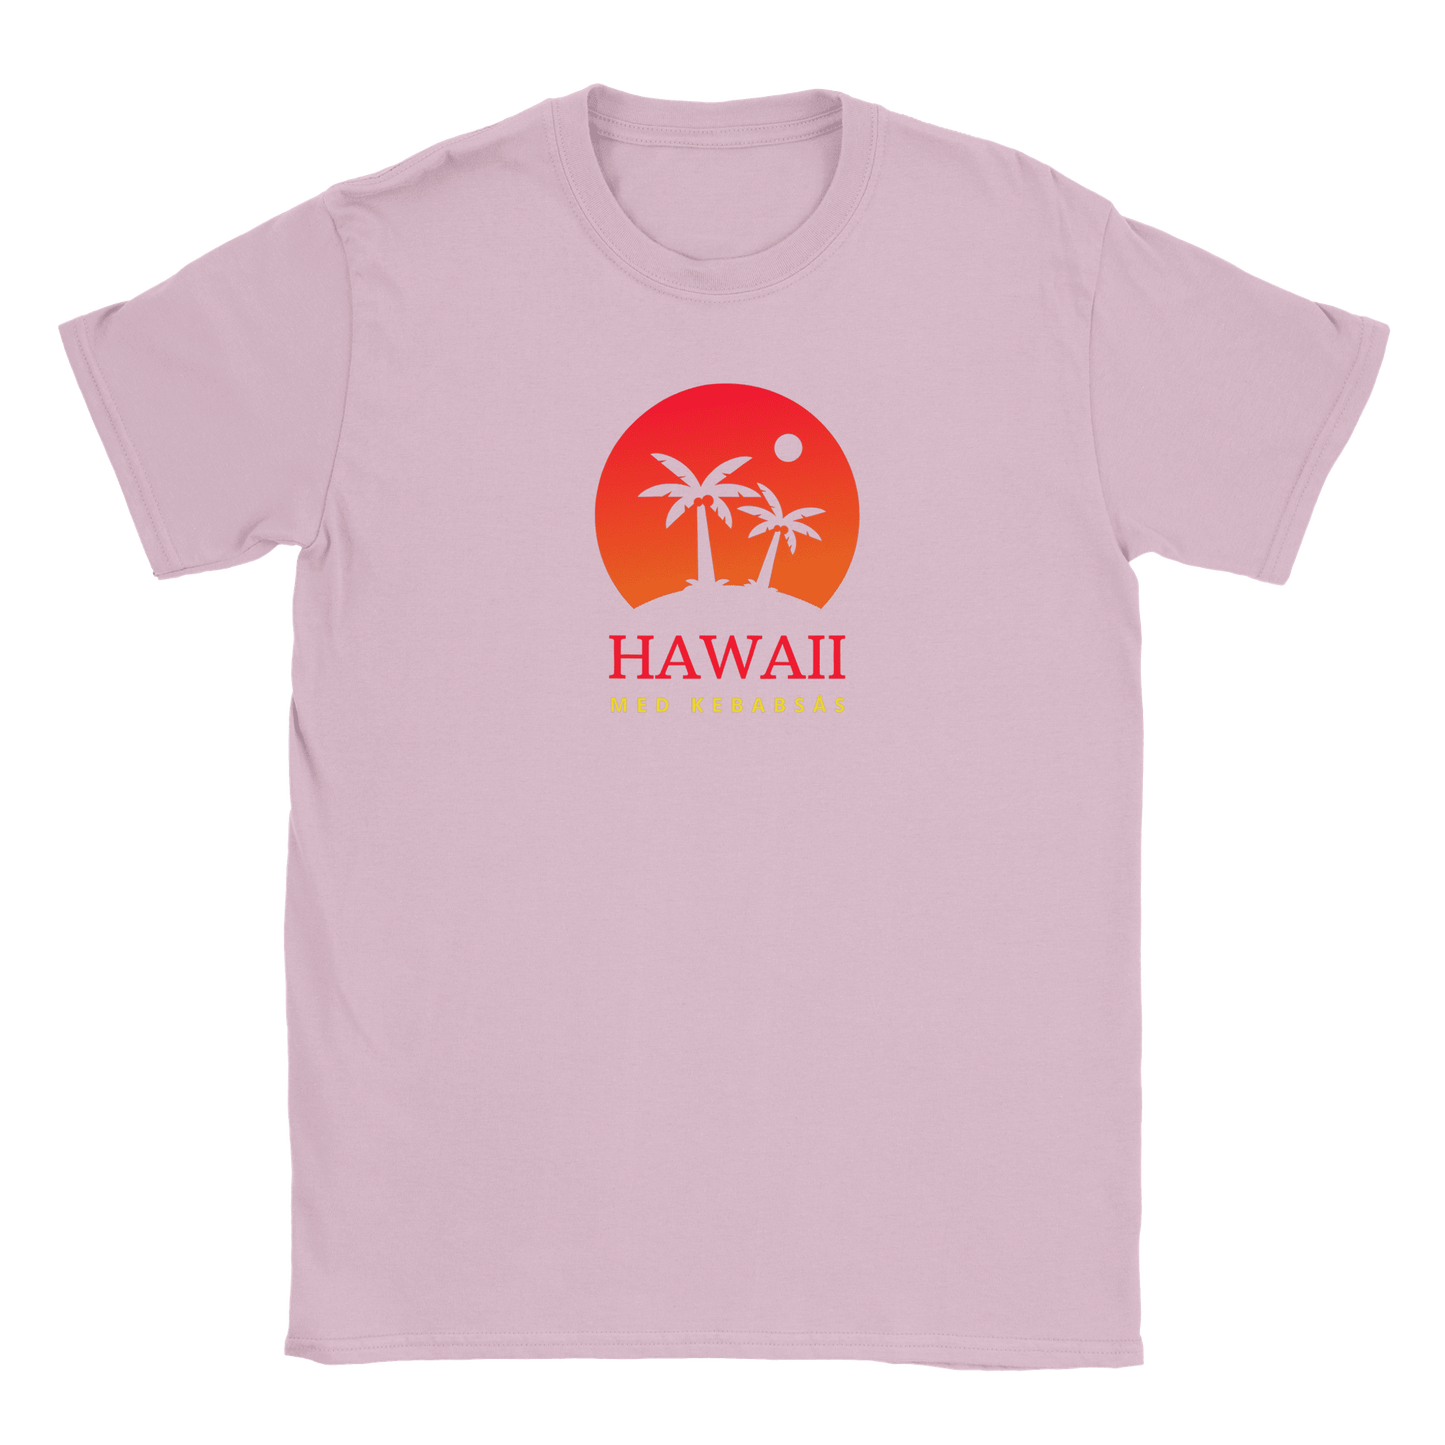 Hawaii med kebabsås - T-shirt för barn Rosa